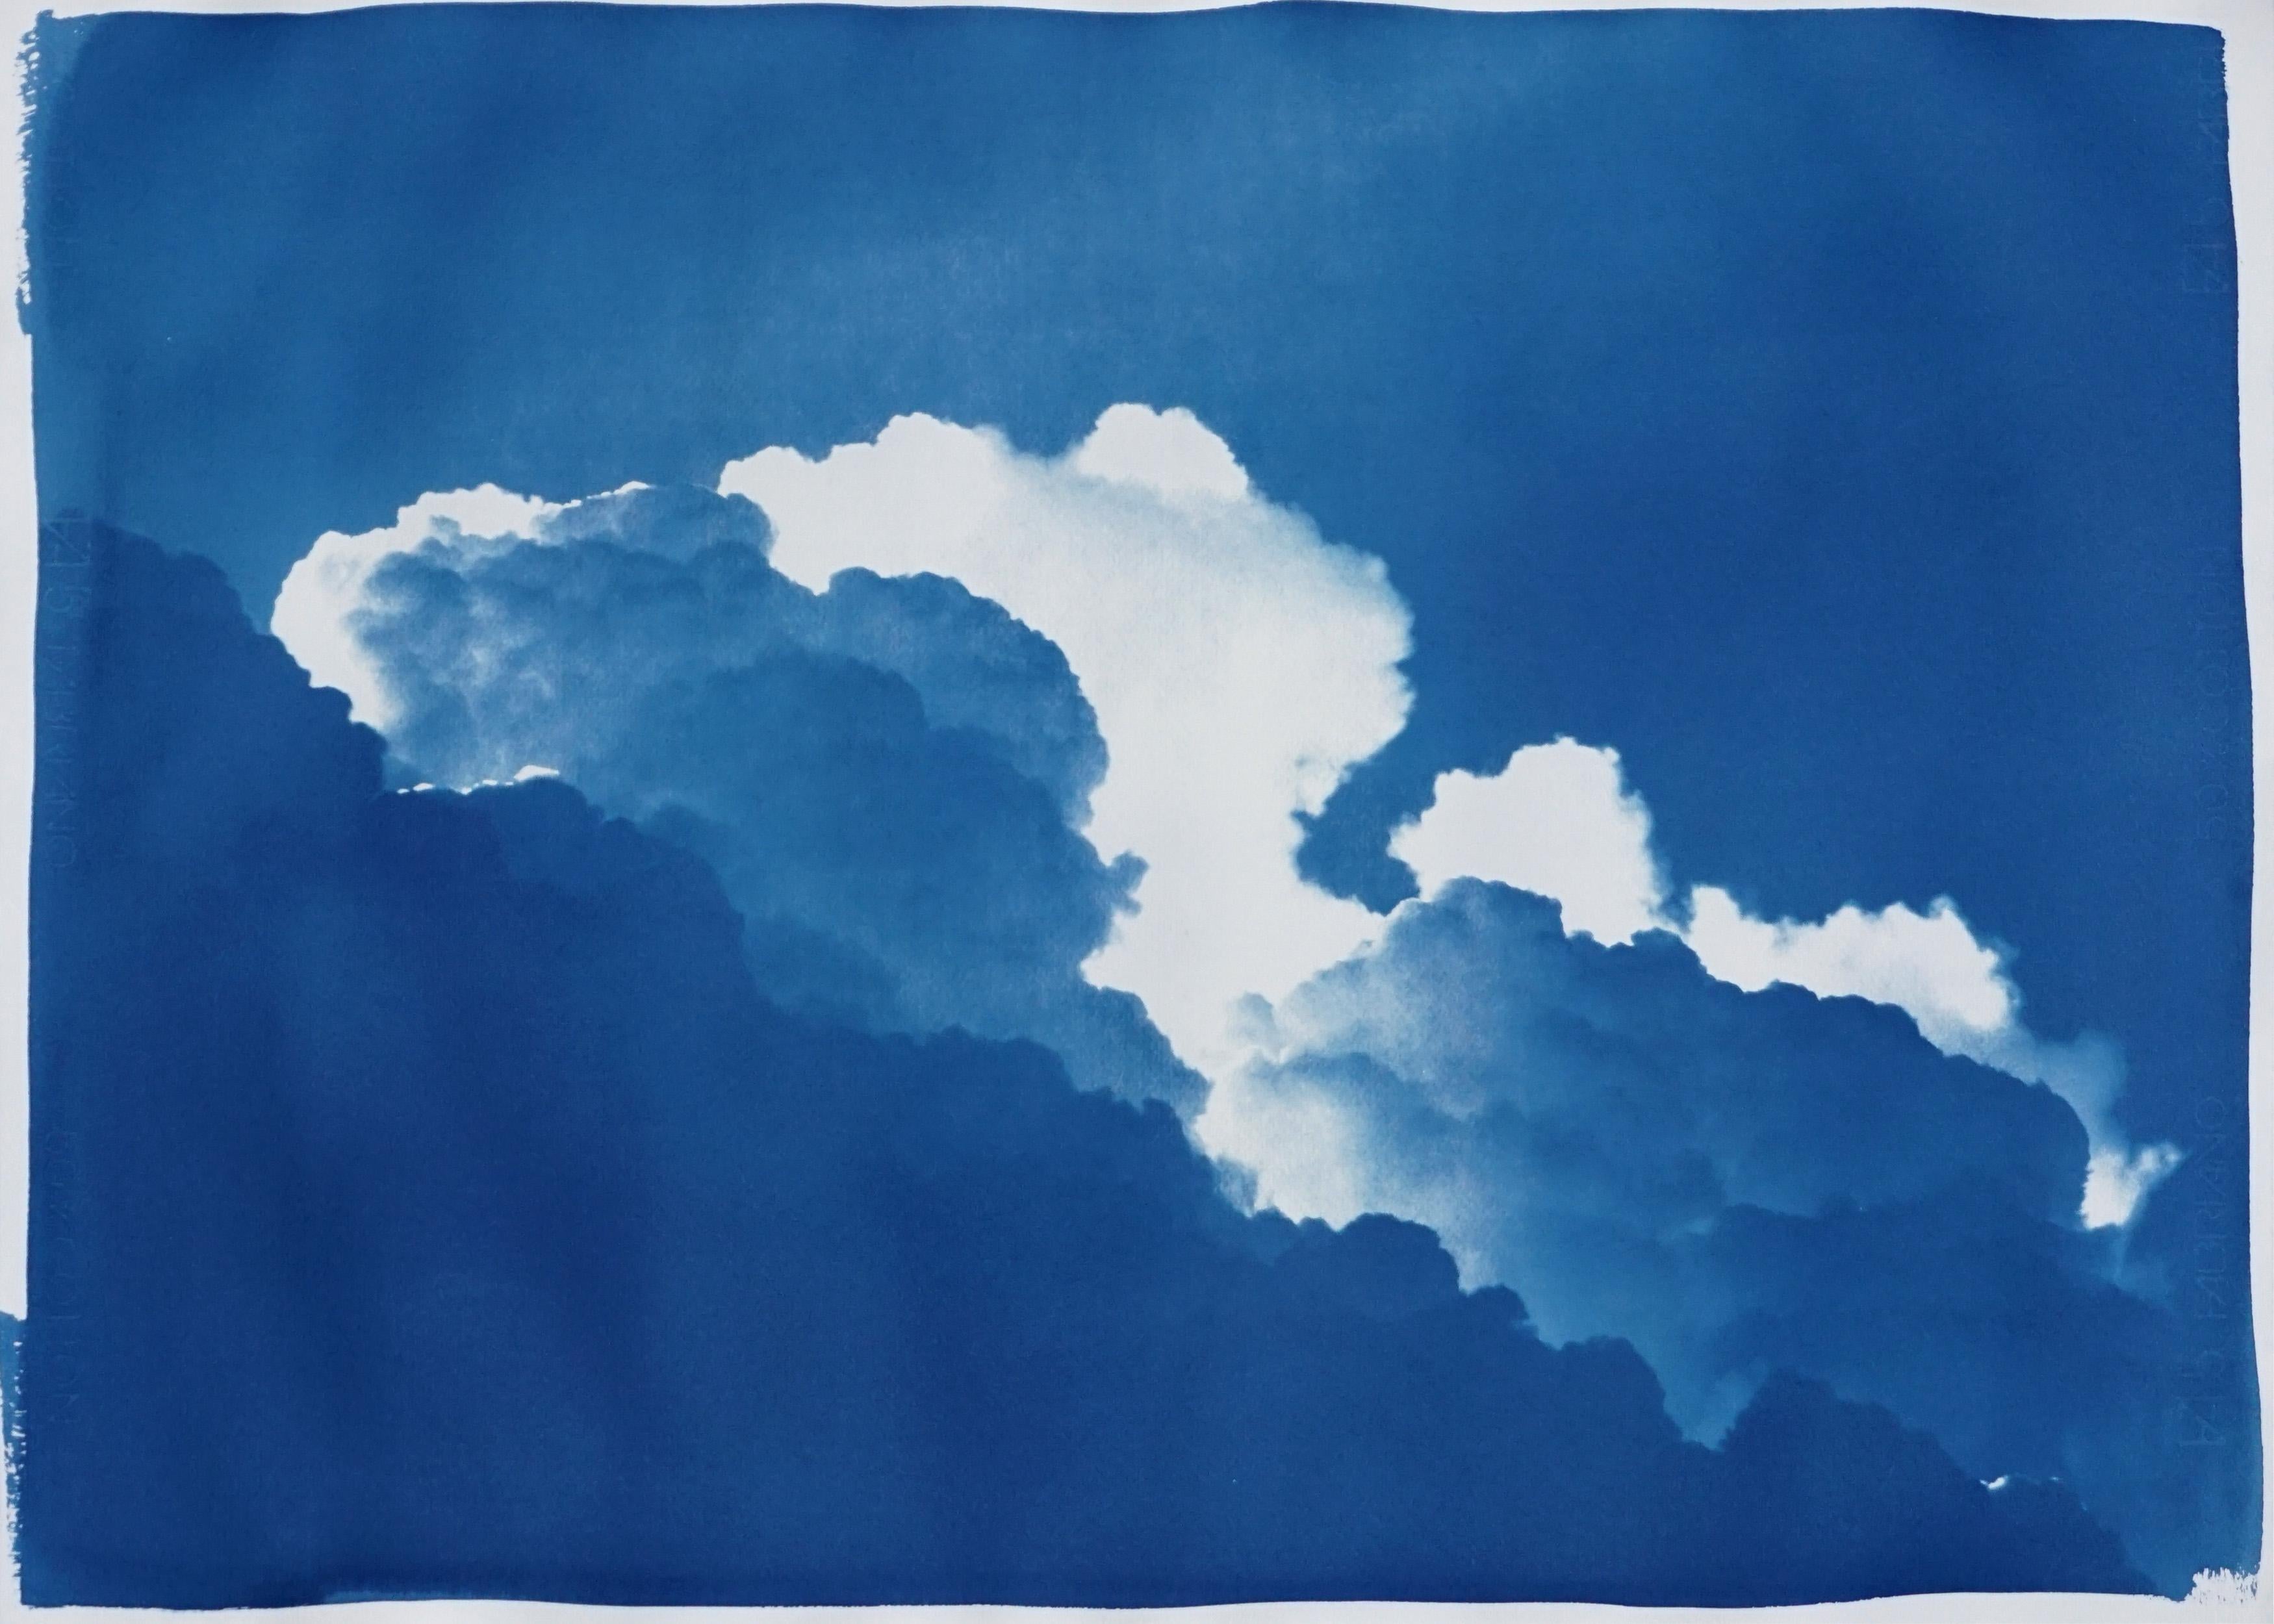 Kind of Cyan Landscape Art - Yves Klein Clouds, Cyanotype on Watercolor Paper, 100x70cm, Blue Art, Landscape 